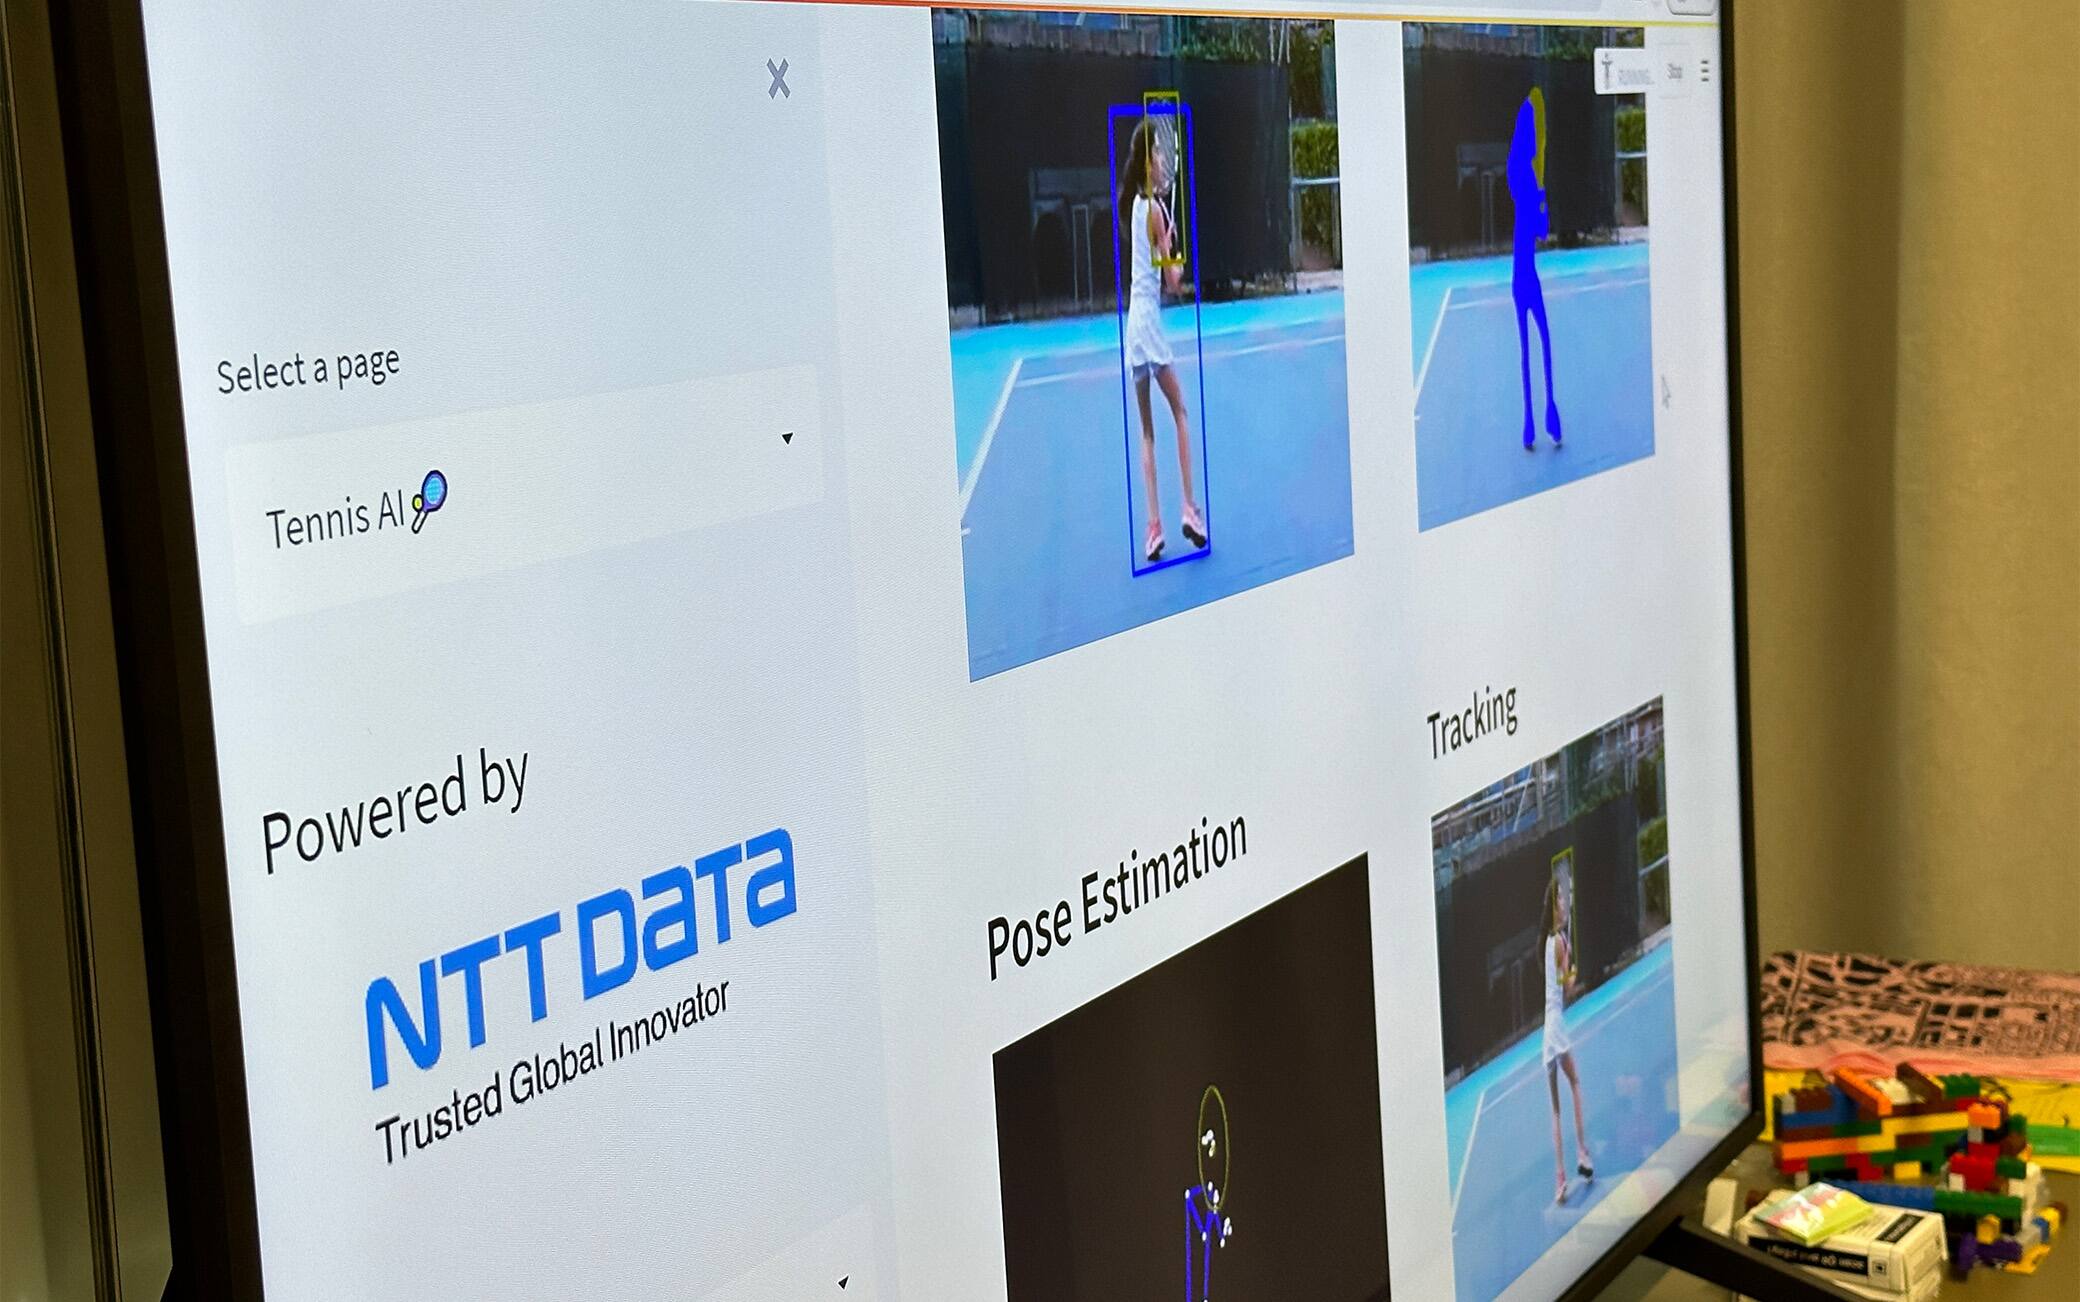 Il programma che analizza gli allenamenti di tennis all’interno dell’Innovation Center di NTT DATA Italia a Milano